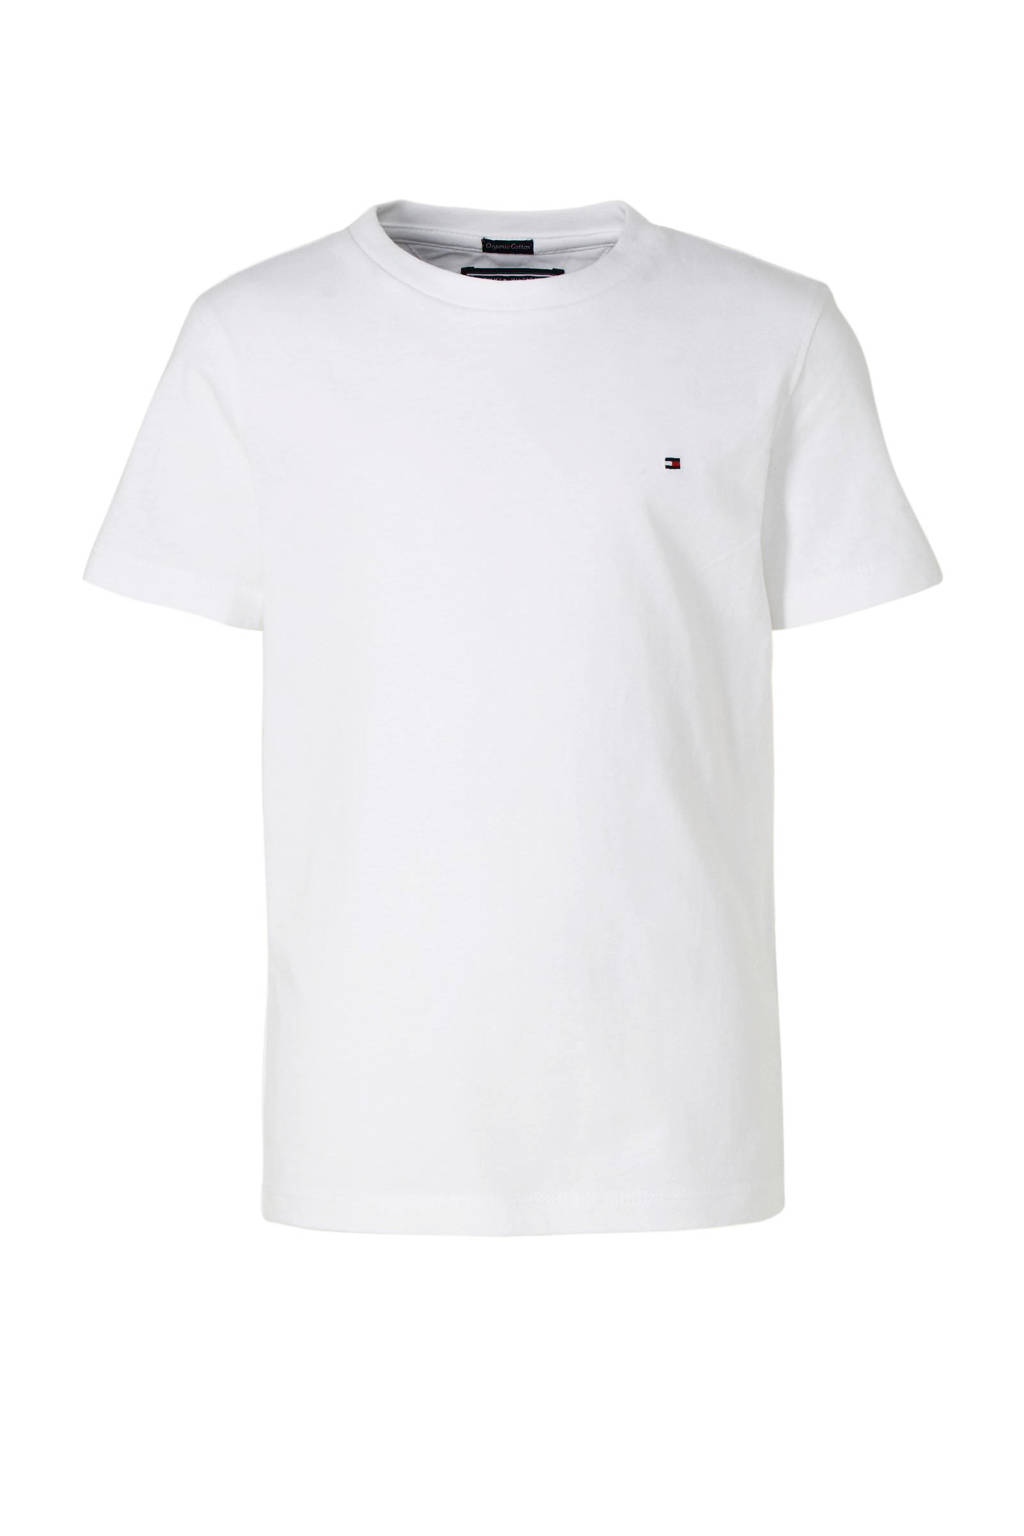 muur Australische persoon Antarctica Tommy Hilfiger T-shirt wit kopen? | Morgen in huis | kleertjes.com